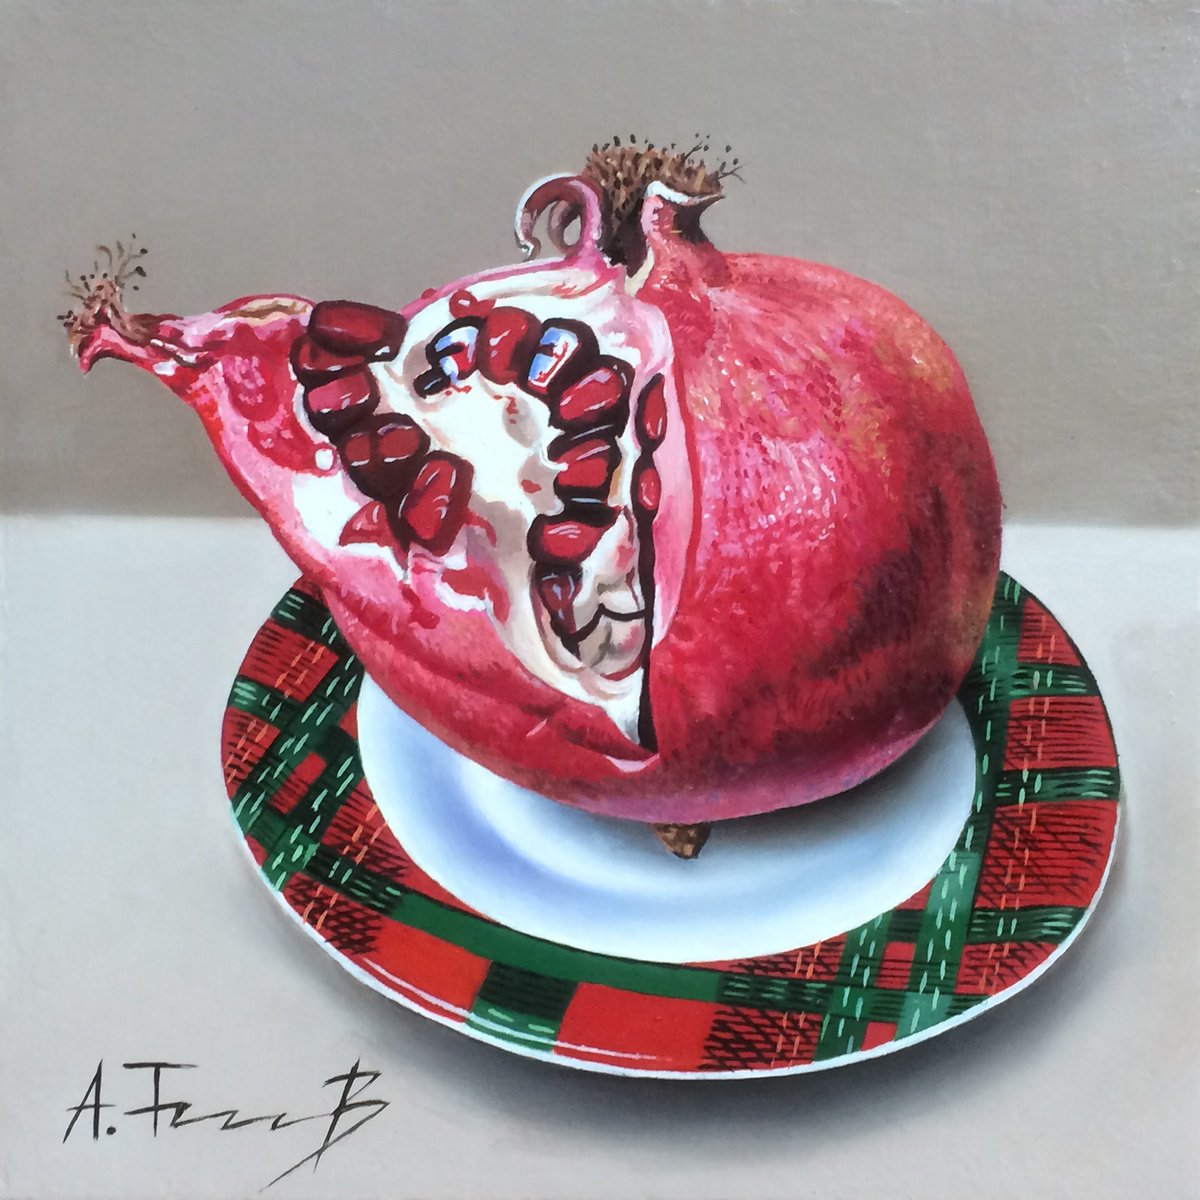 Pomegranate on a Saucer by Alexander Titorenkov